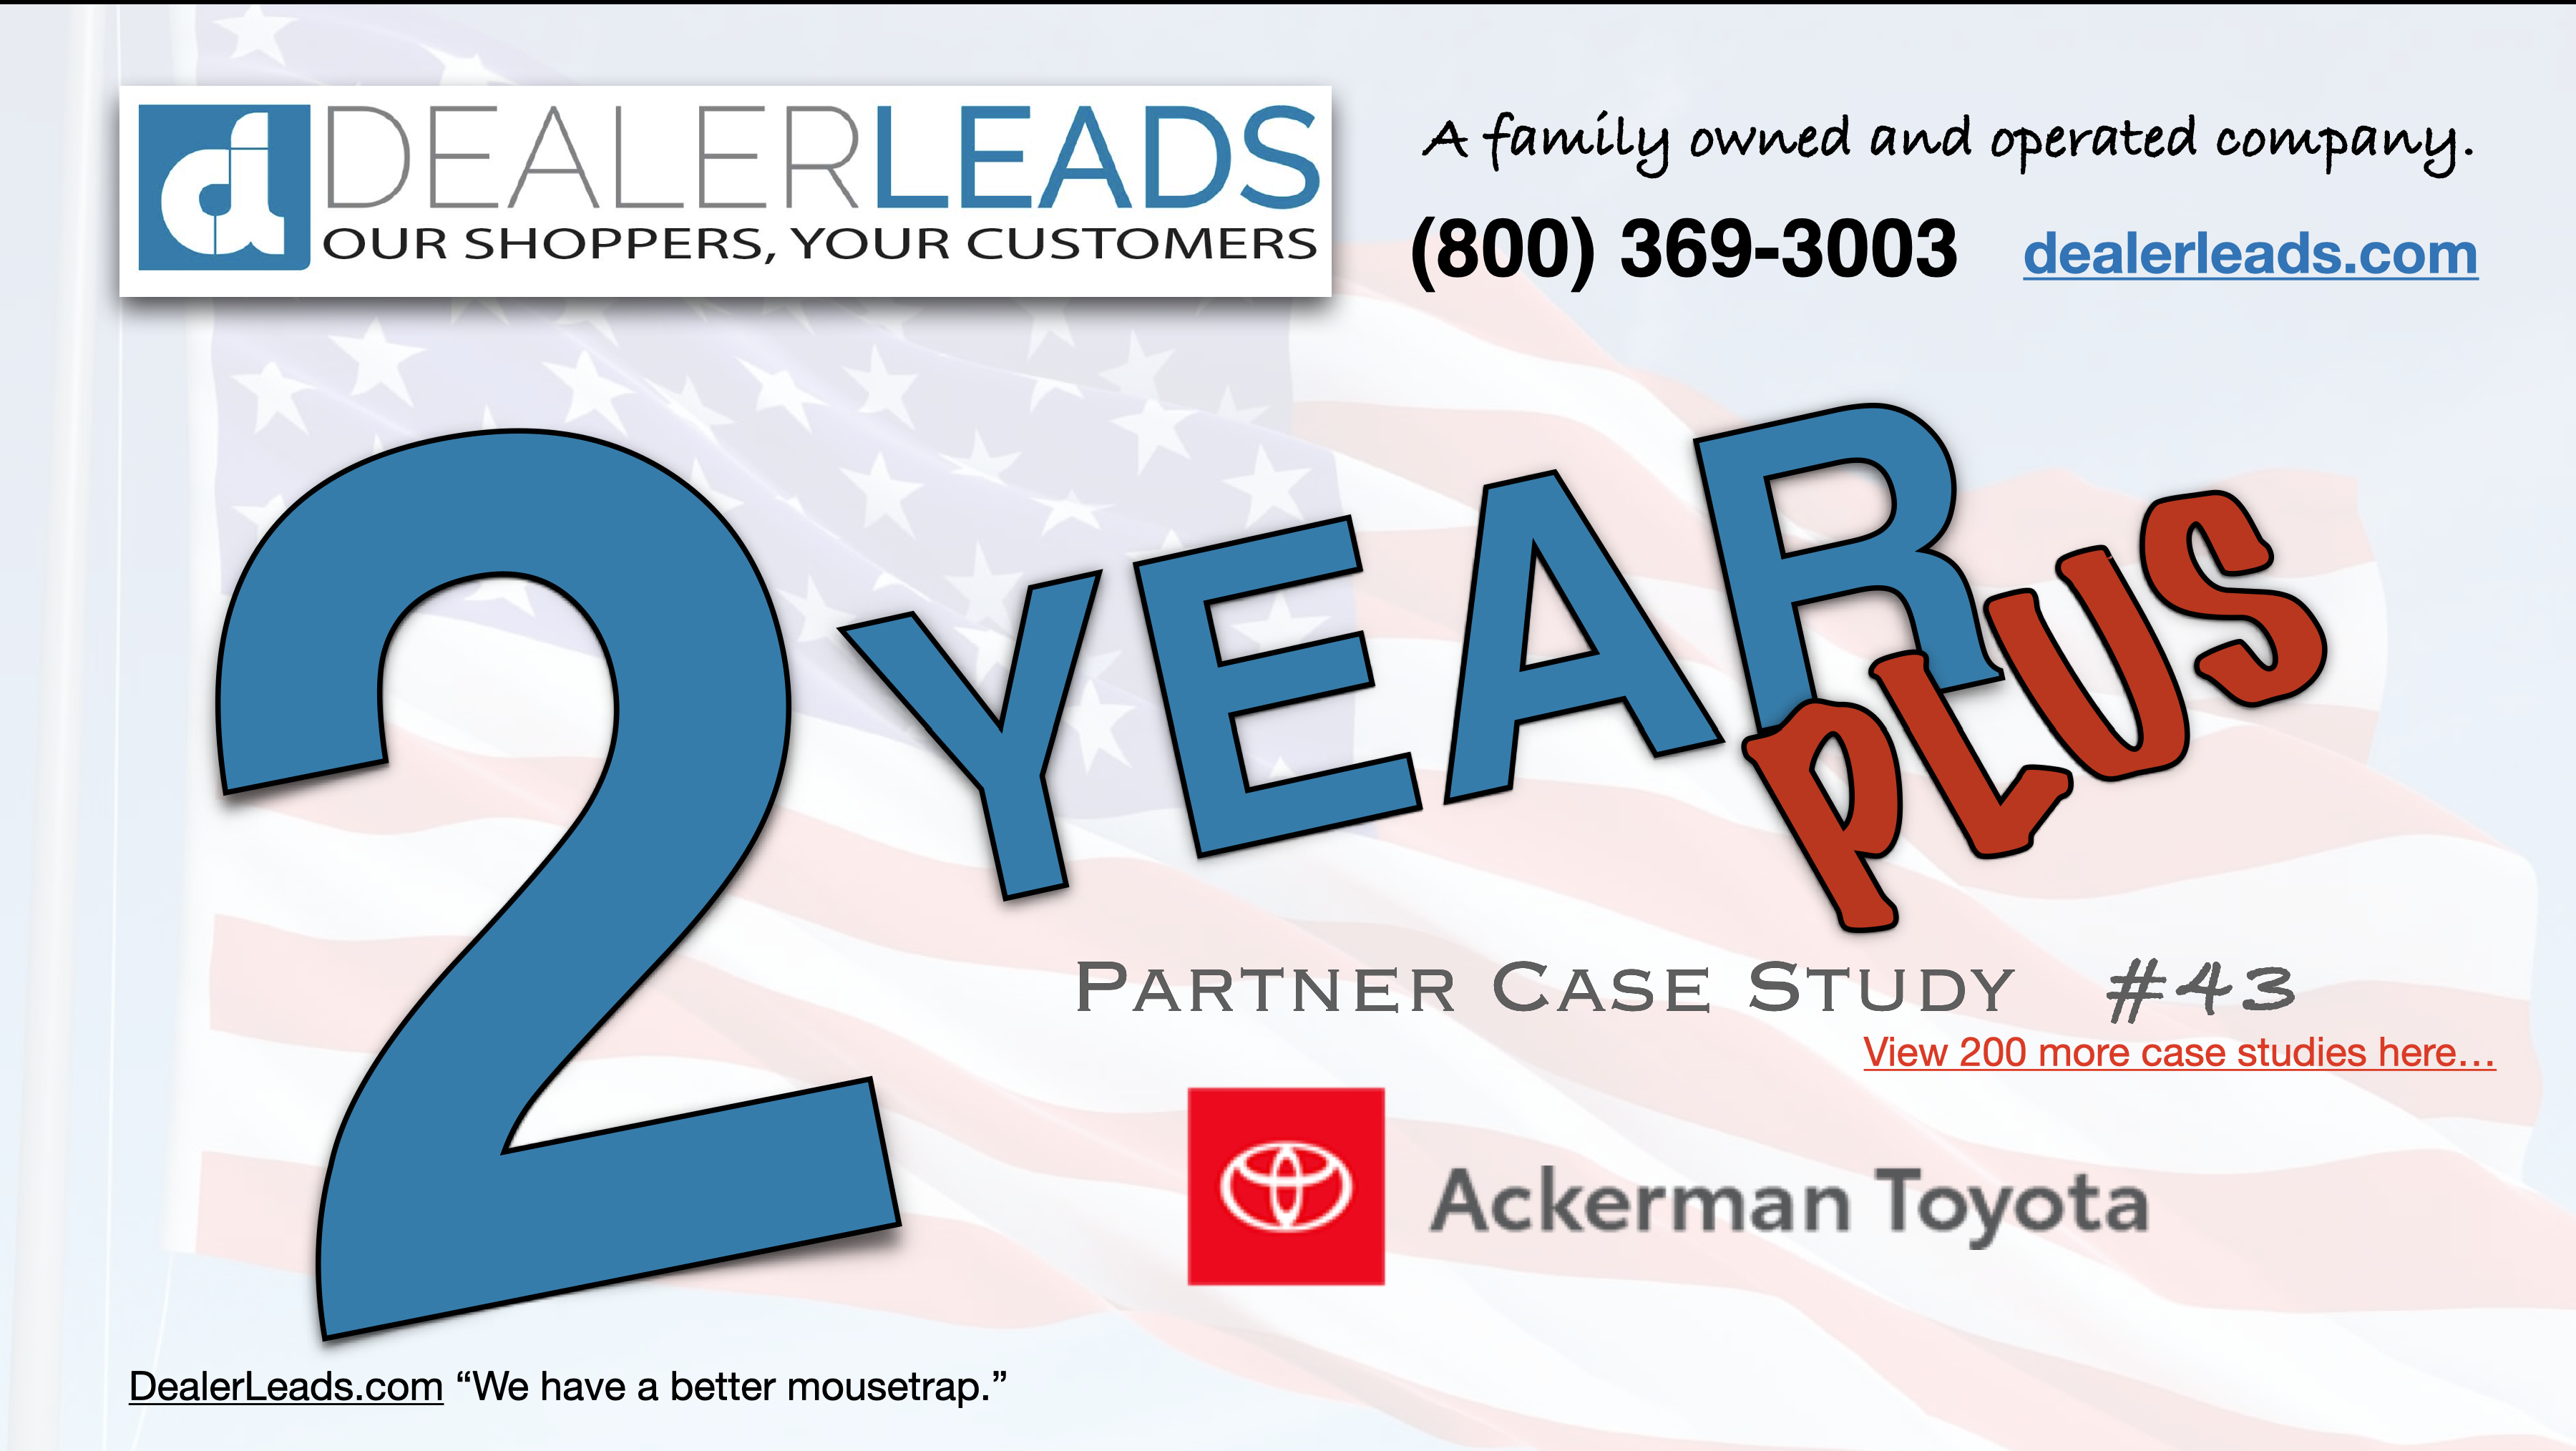 Ackerman Toyota – St. Louis, MO 2 Year Case Study